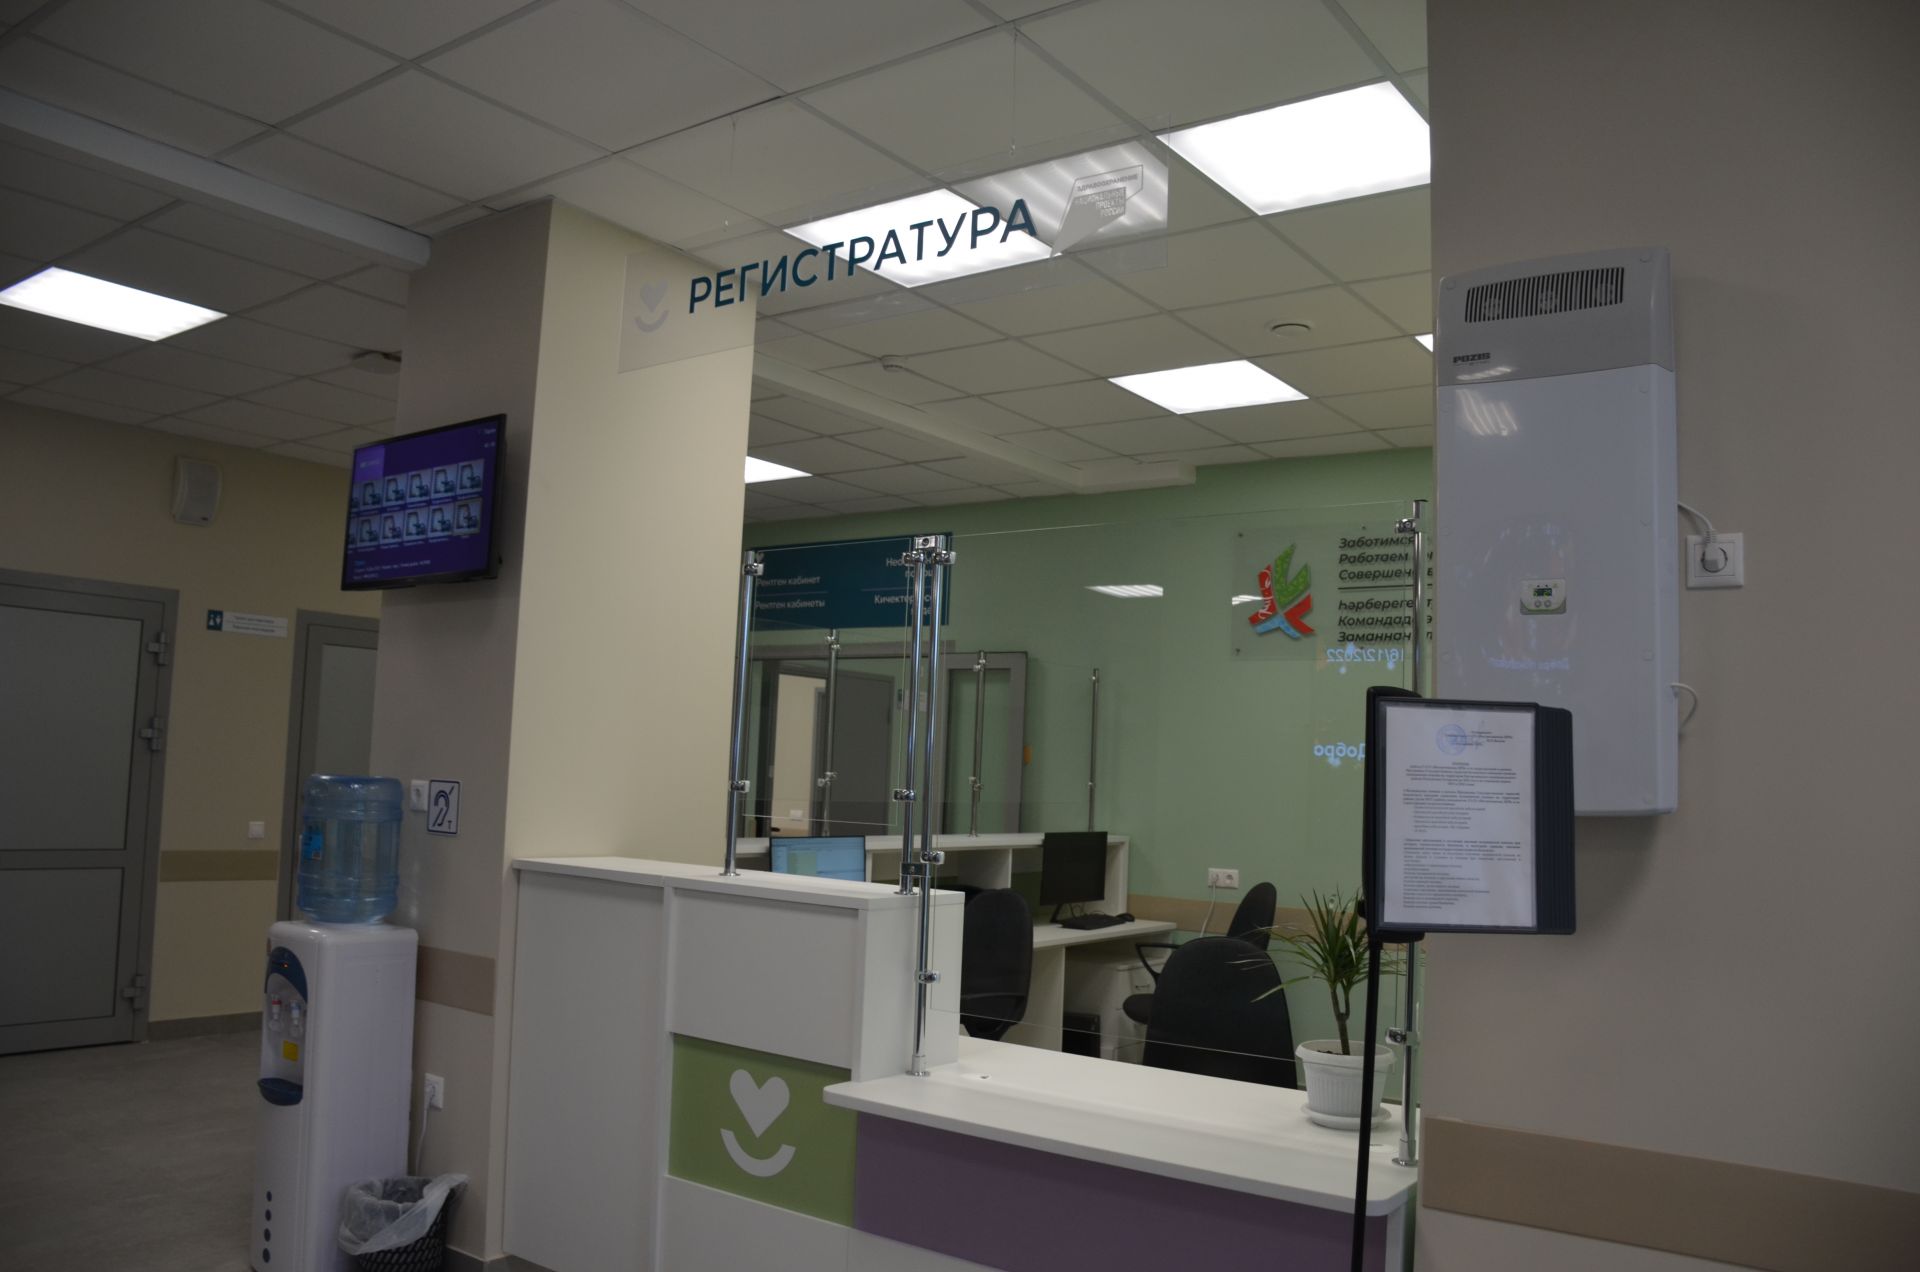 Министр здравоохранения РТ осмотрел новую амбулаторию в Куюках